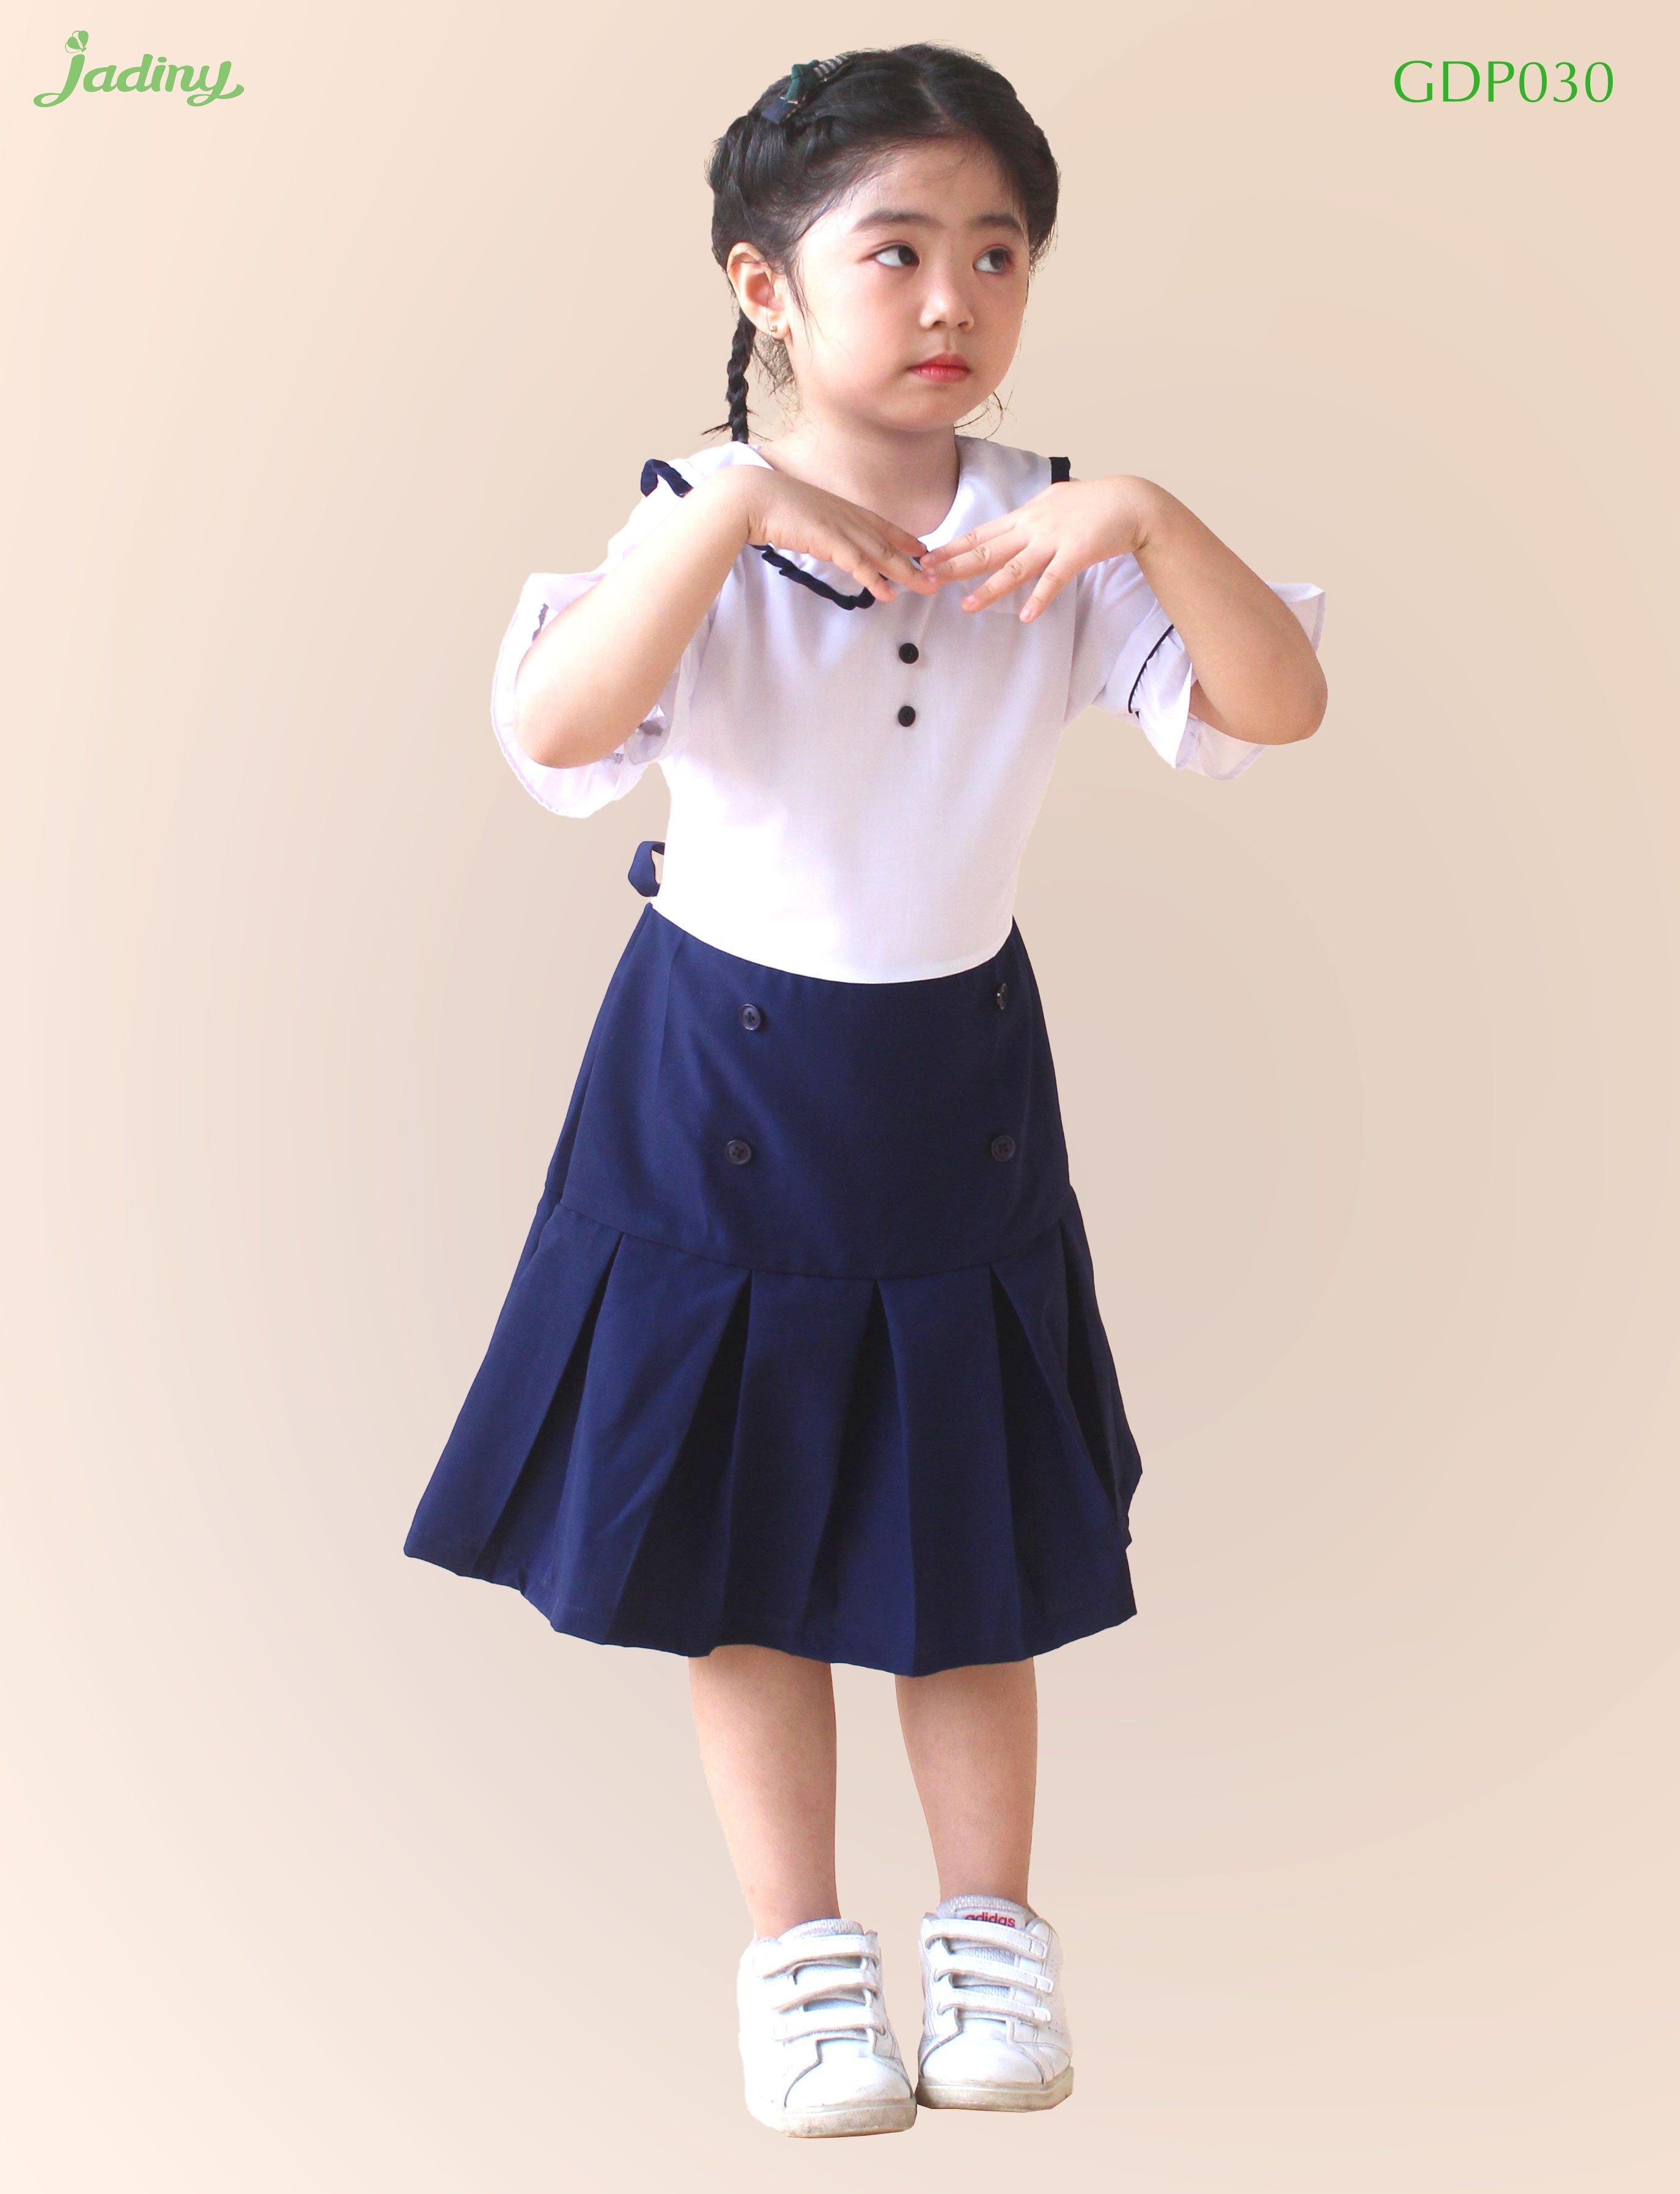 Đầm đi học cho bé gái lớp 1 nhún bèo Jadiny, đầm đồng phục học sinh cấp 1, tiểu học, kiểu dáng đẹp, thấm hút mồ hôi, vải chất lượng, không ra màu